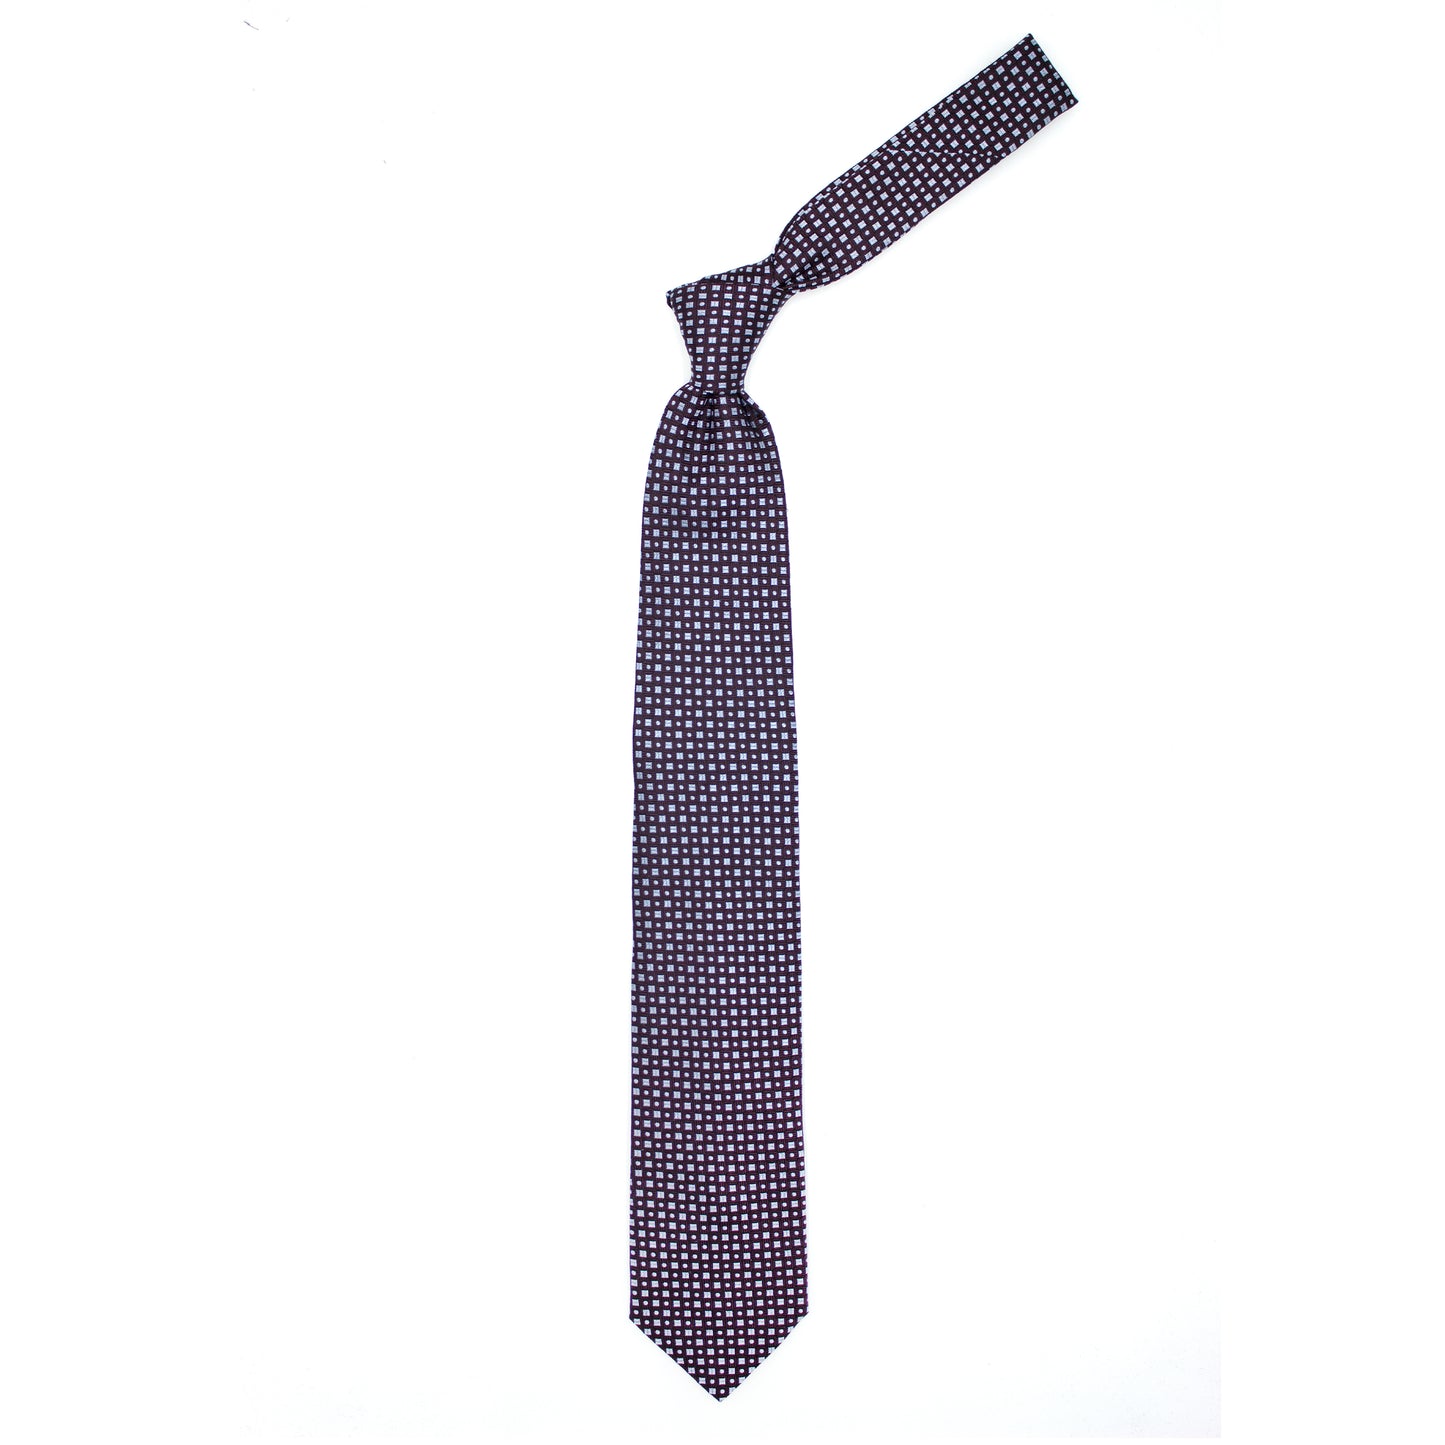 Cravatta marrone con pattern geometrico azzurro